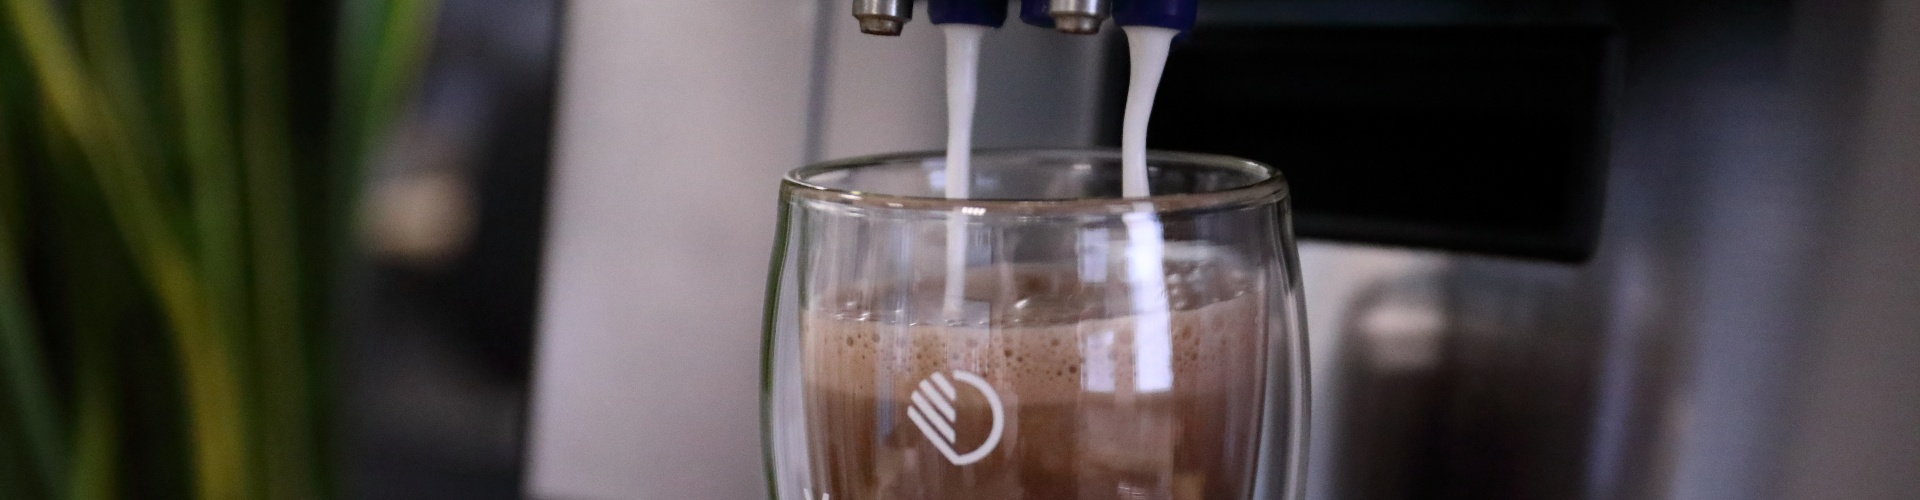 Glas die gevuld wordt met warme chocomelk uit een Van Duijnen koffiemachine